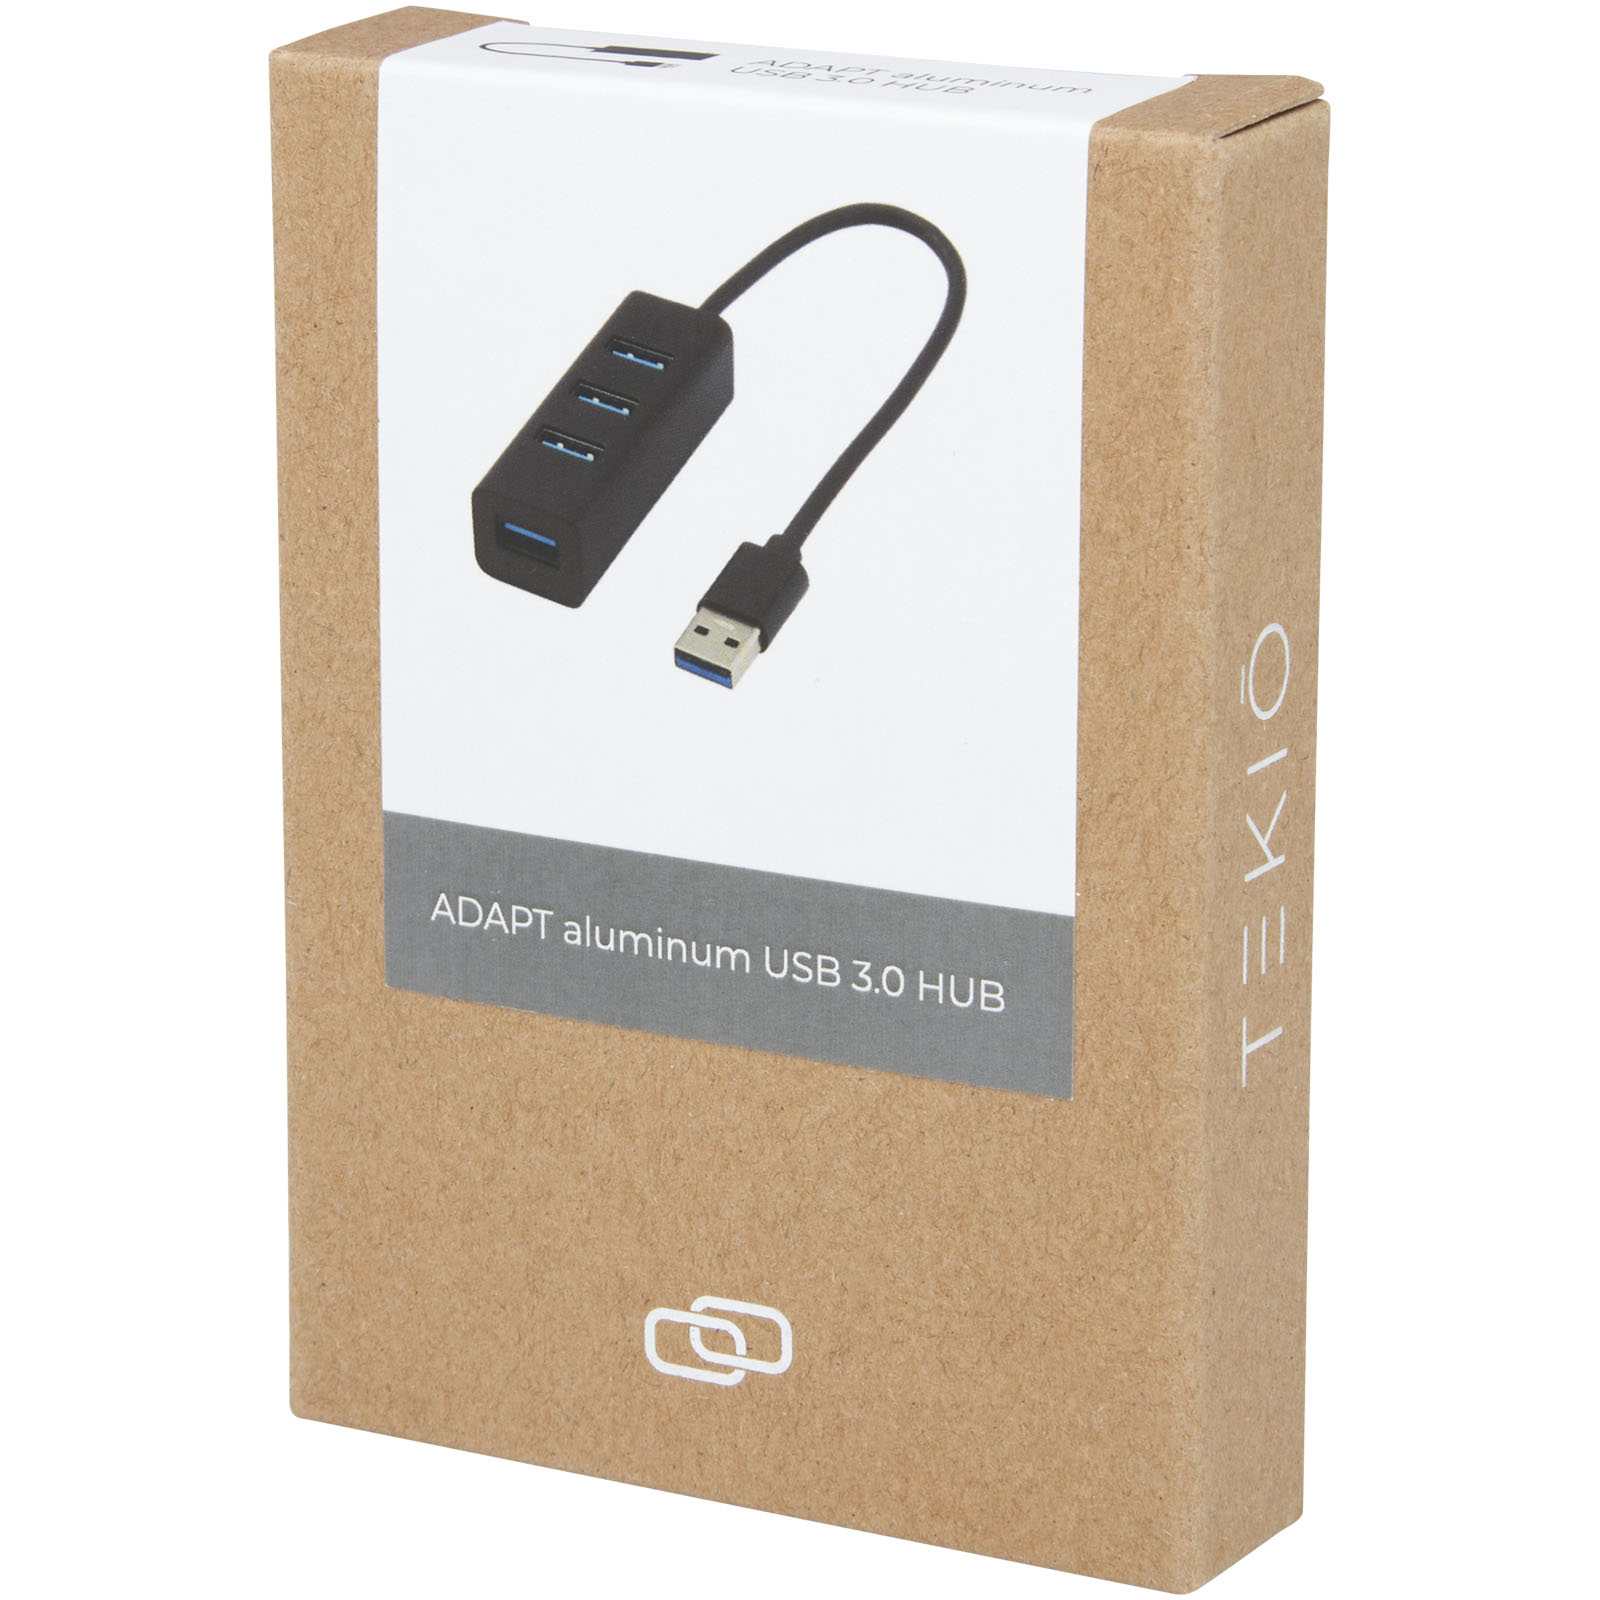 Hubs USB publicitaires - Hub USB 3.0 ADAPT en aluminium  - 1